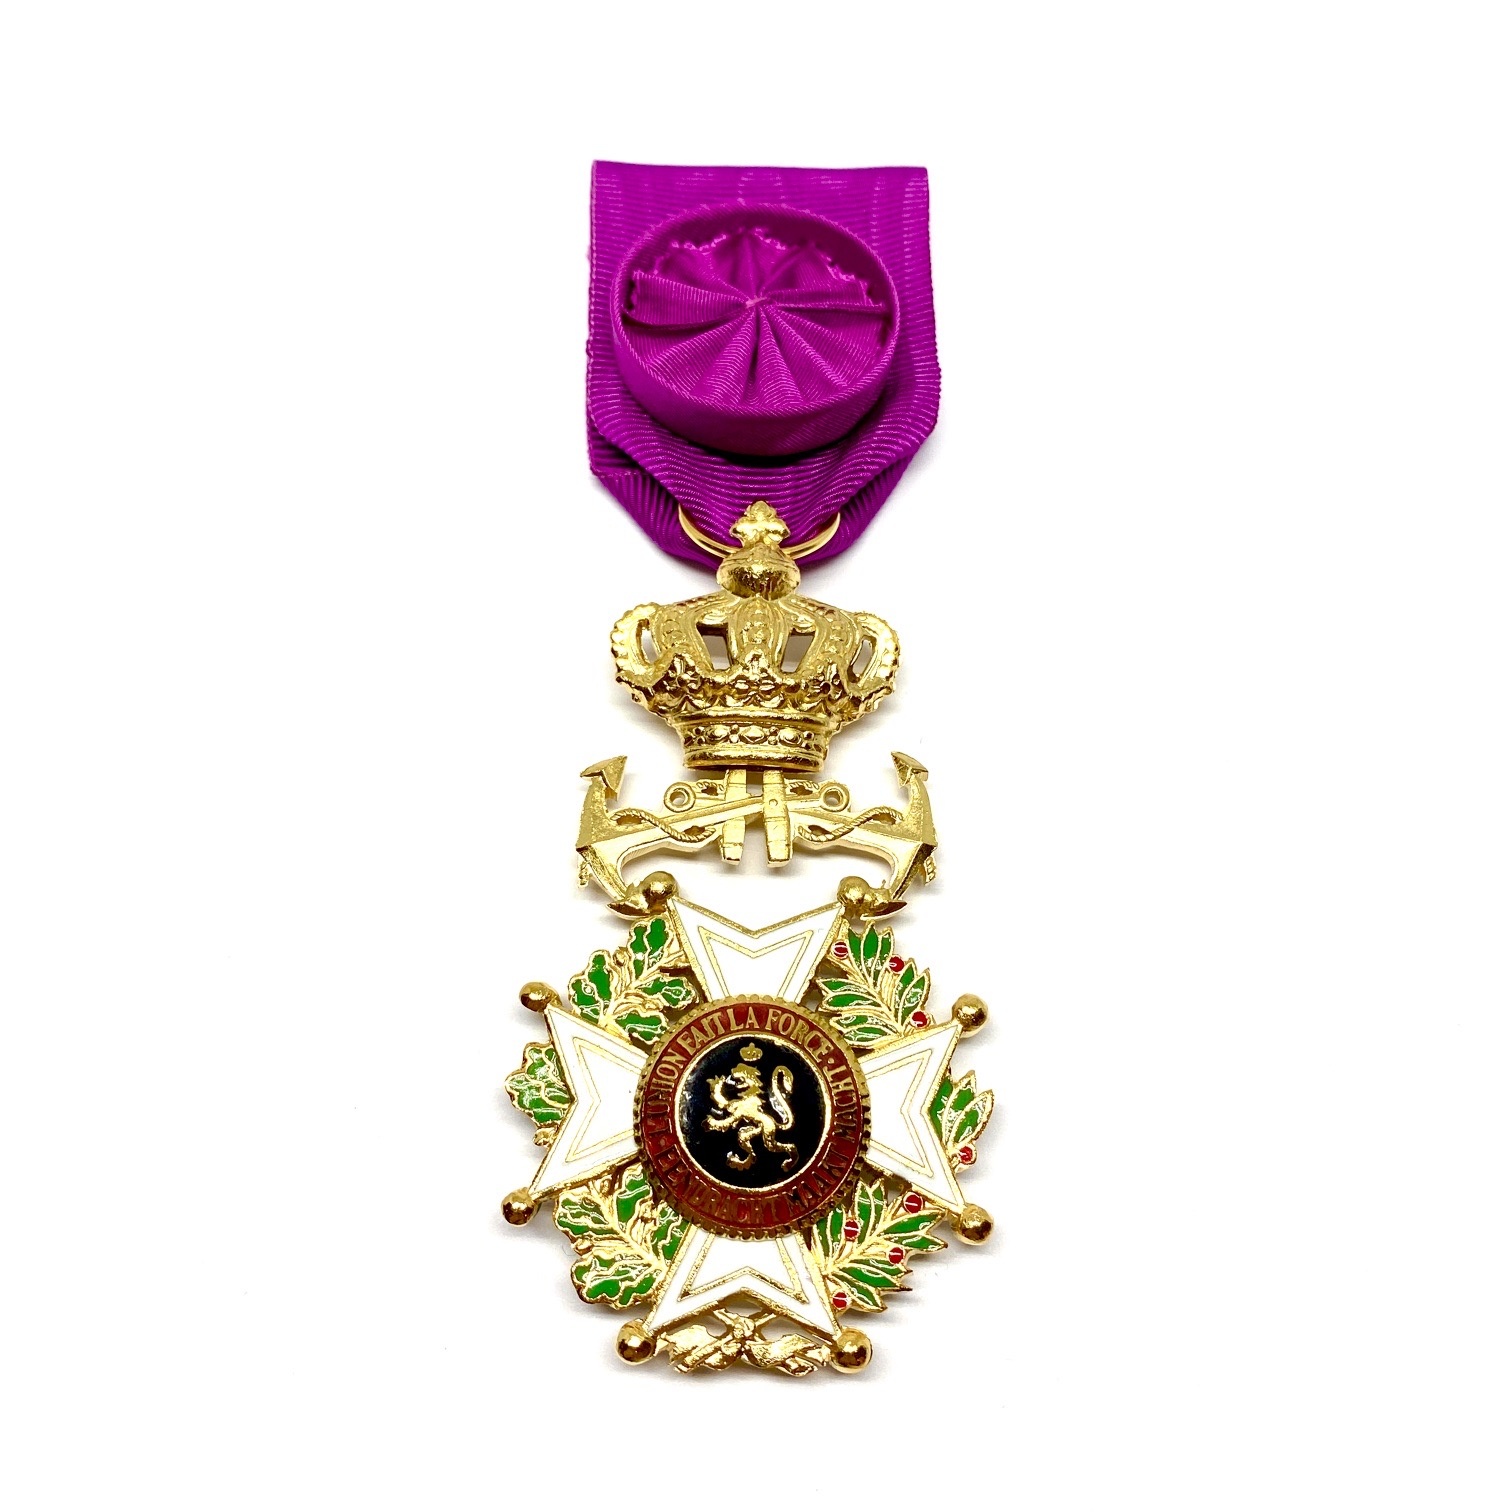 Officier de l'Ordre de Léopold Maritime